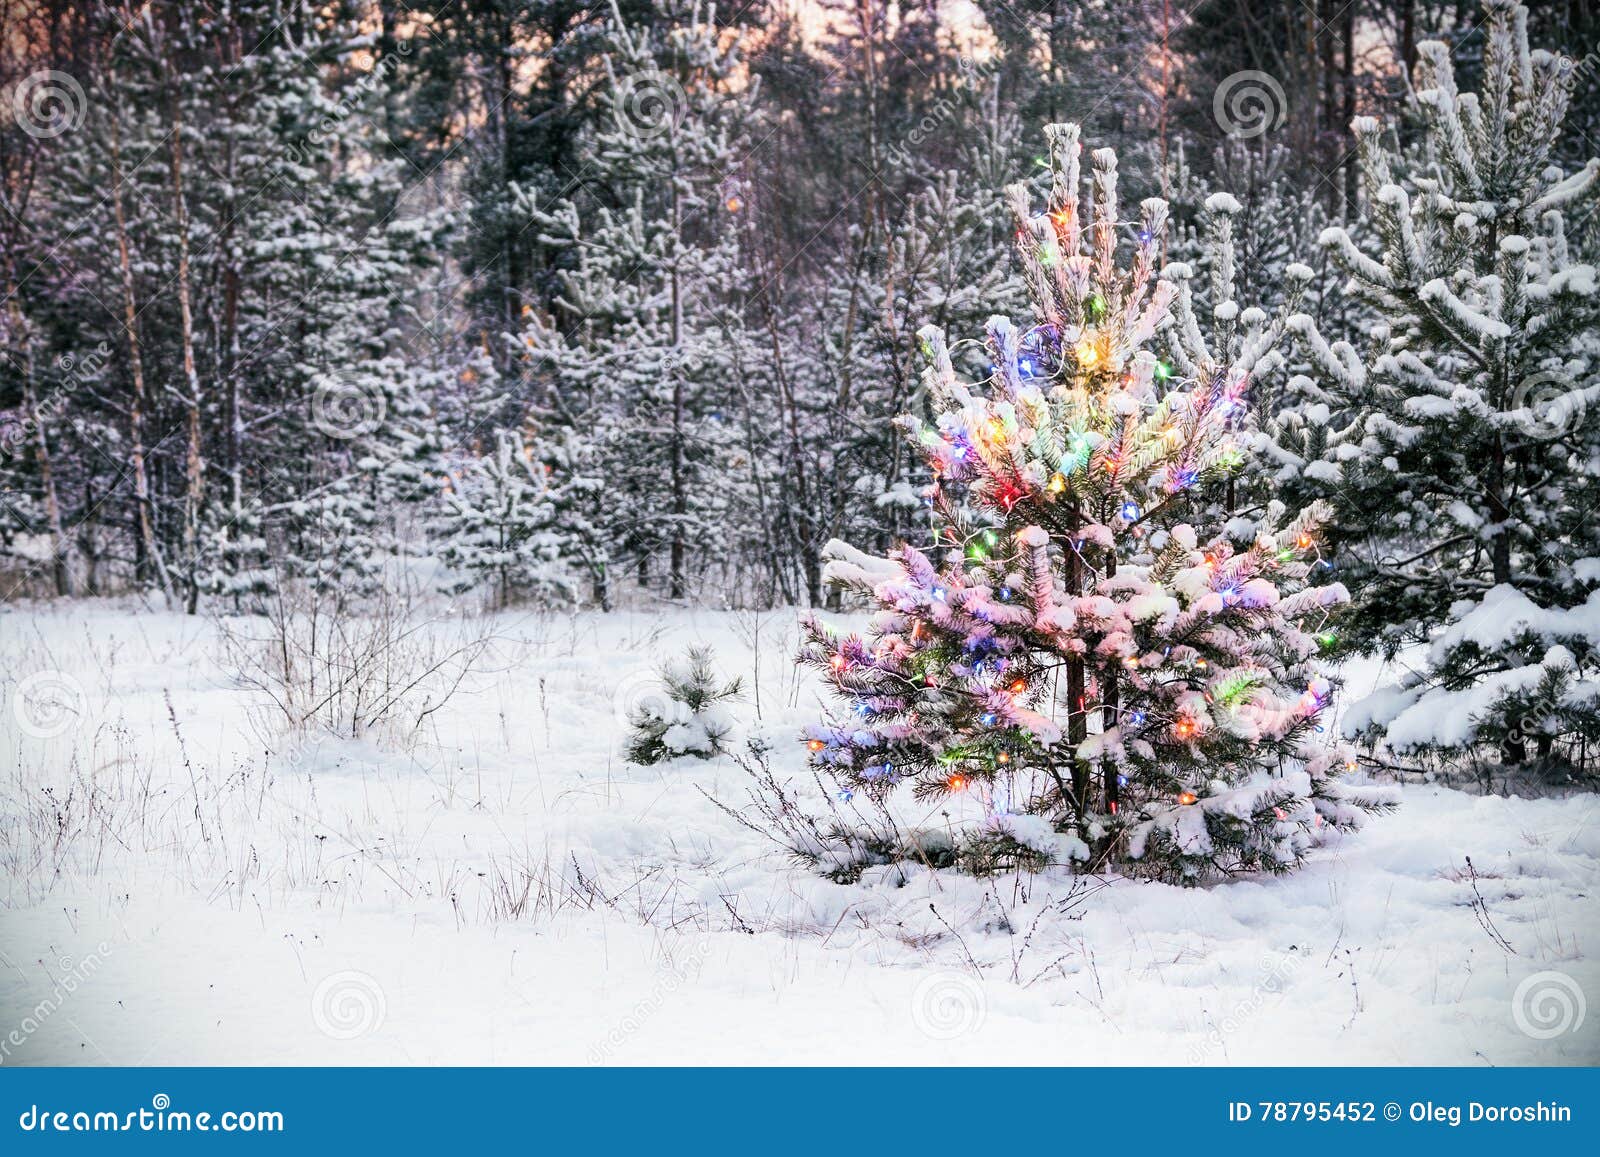 Foto Di Inverno Natale.Albero Di Natale Nella Foresta Di Inverno Con Le Luci Colorate Fotografia Stock Immagine Di Bello Paesaggio 78795452